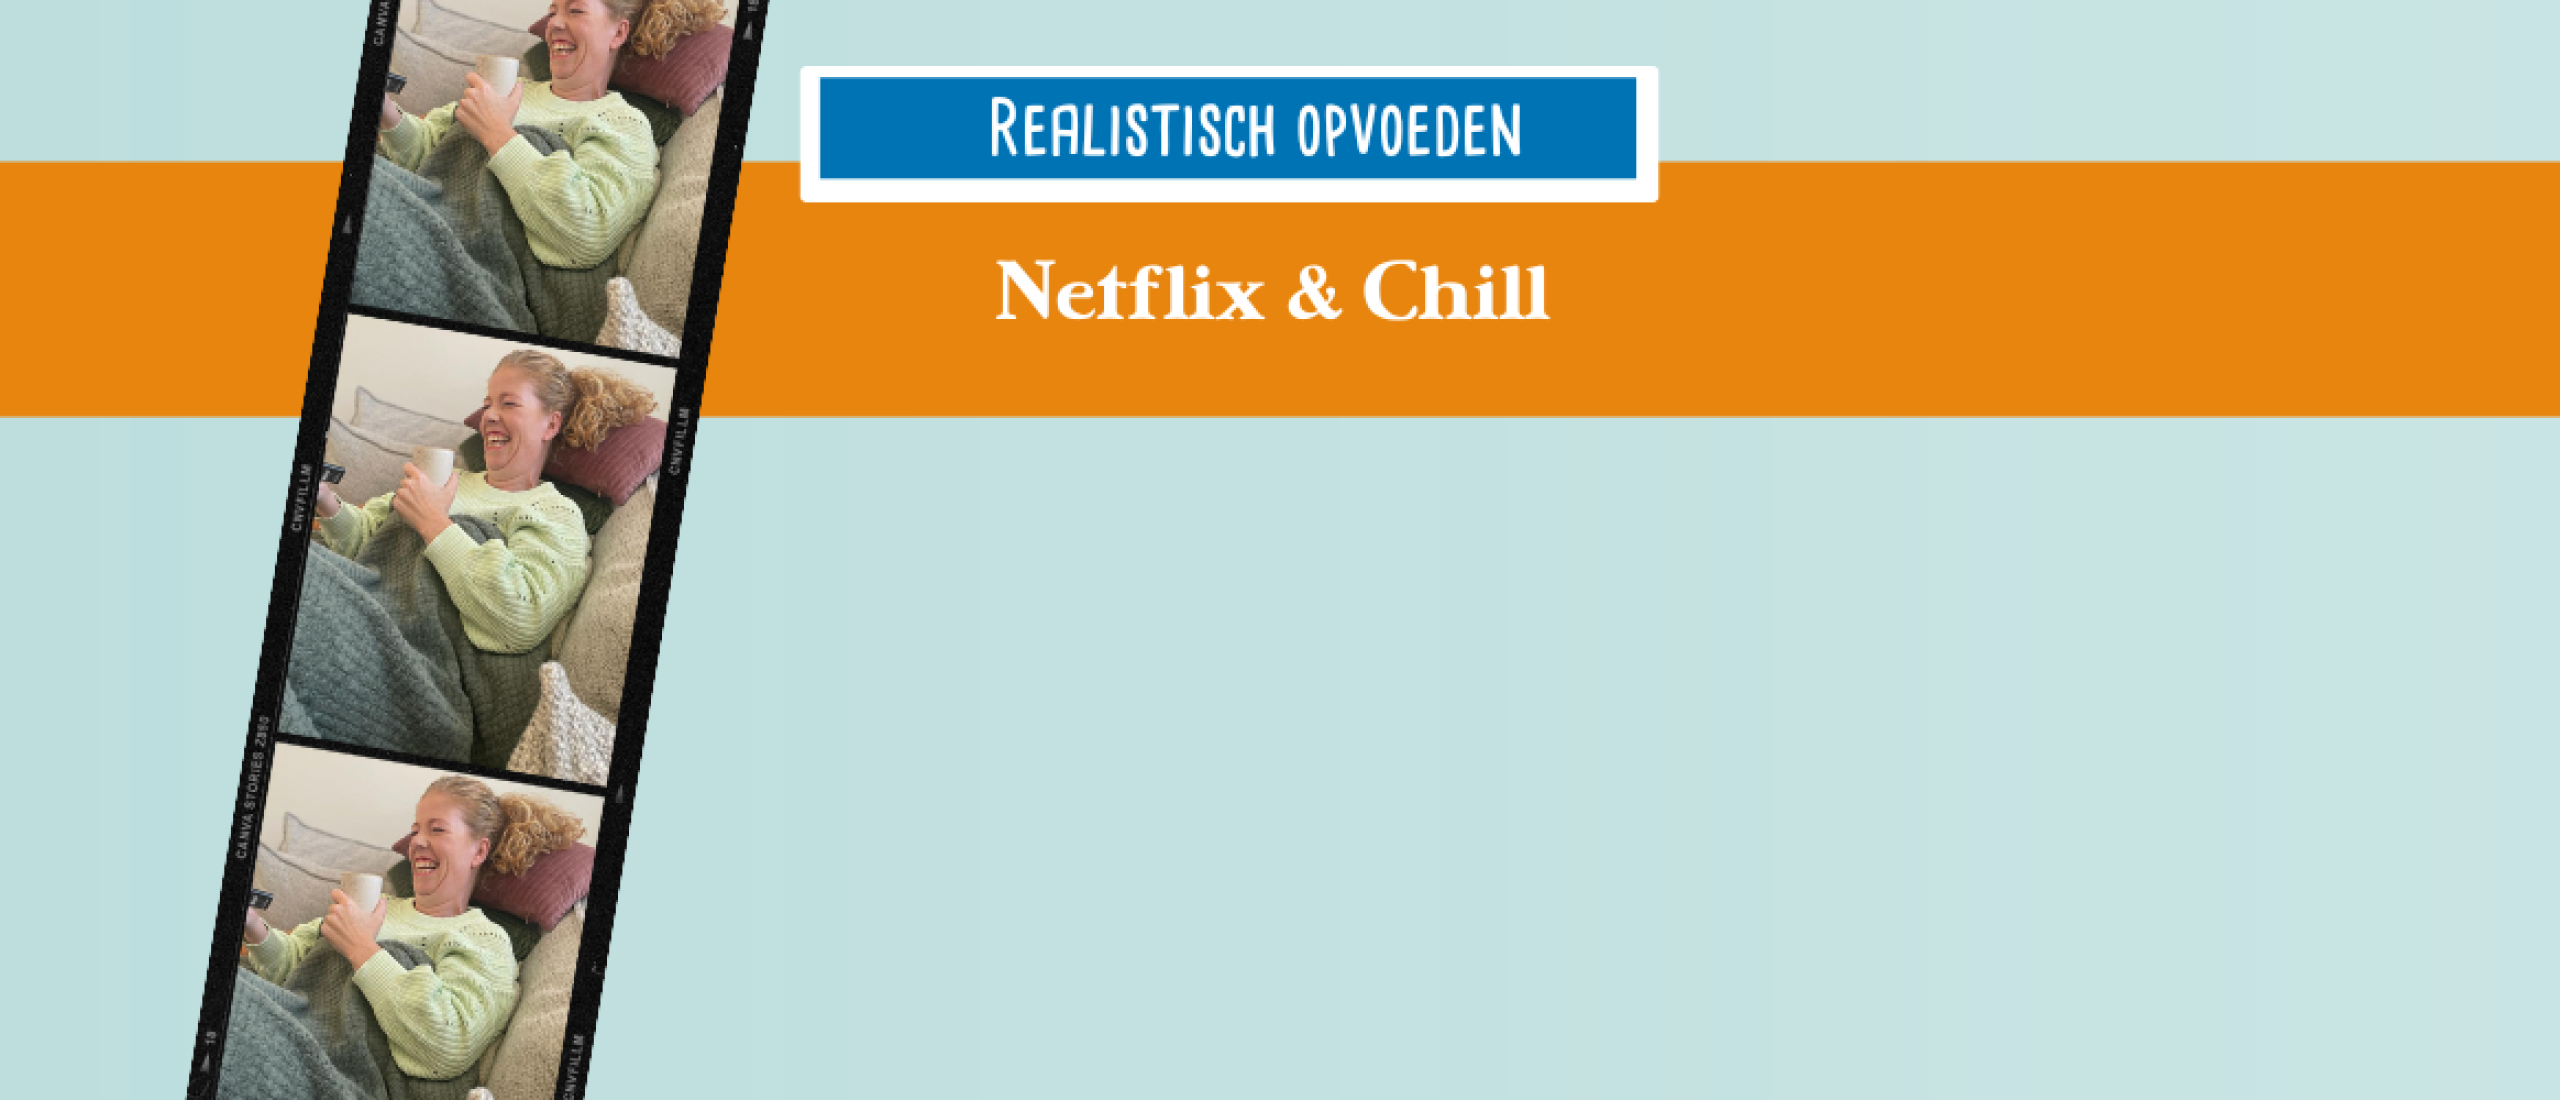 Netflix & chill